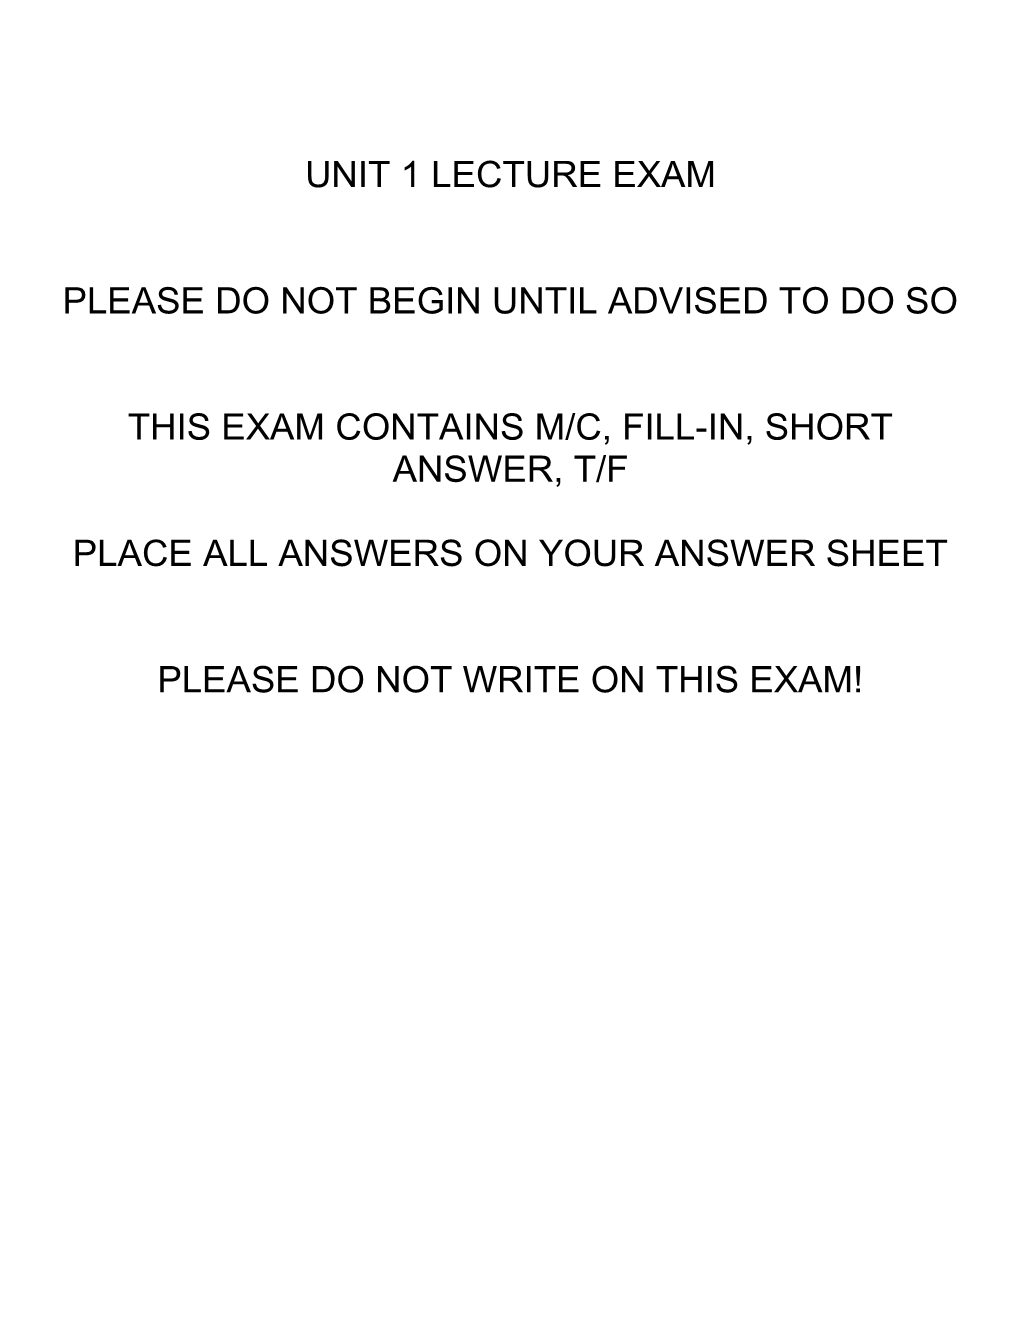 Unit 1 Lecture Exam